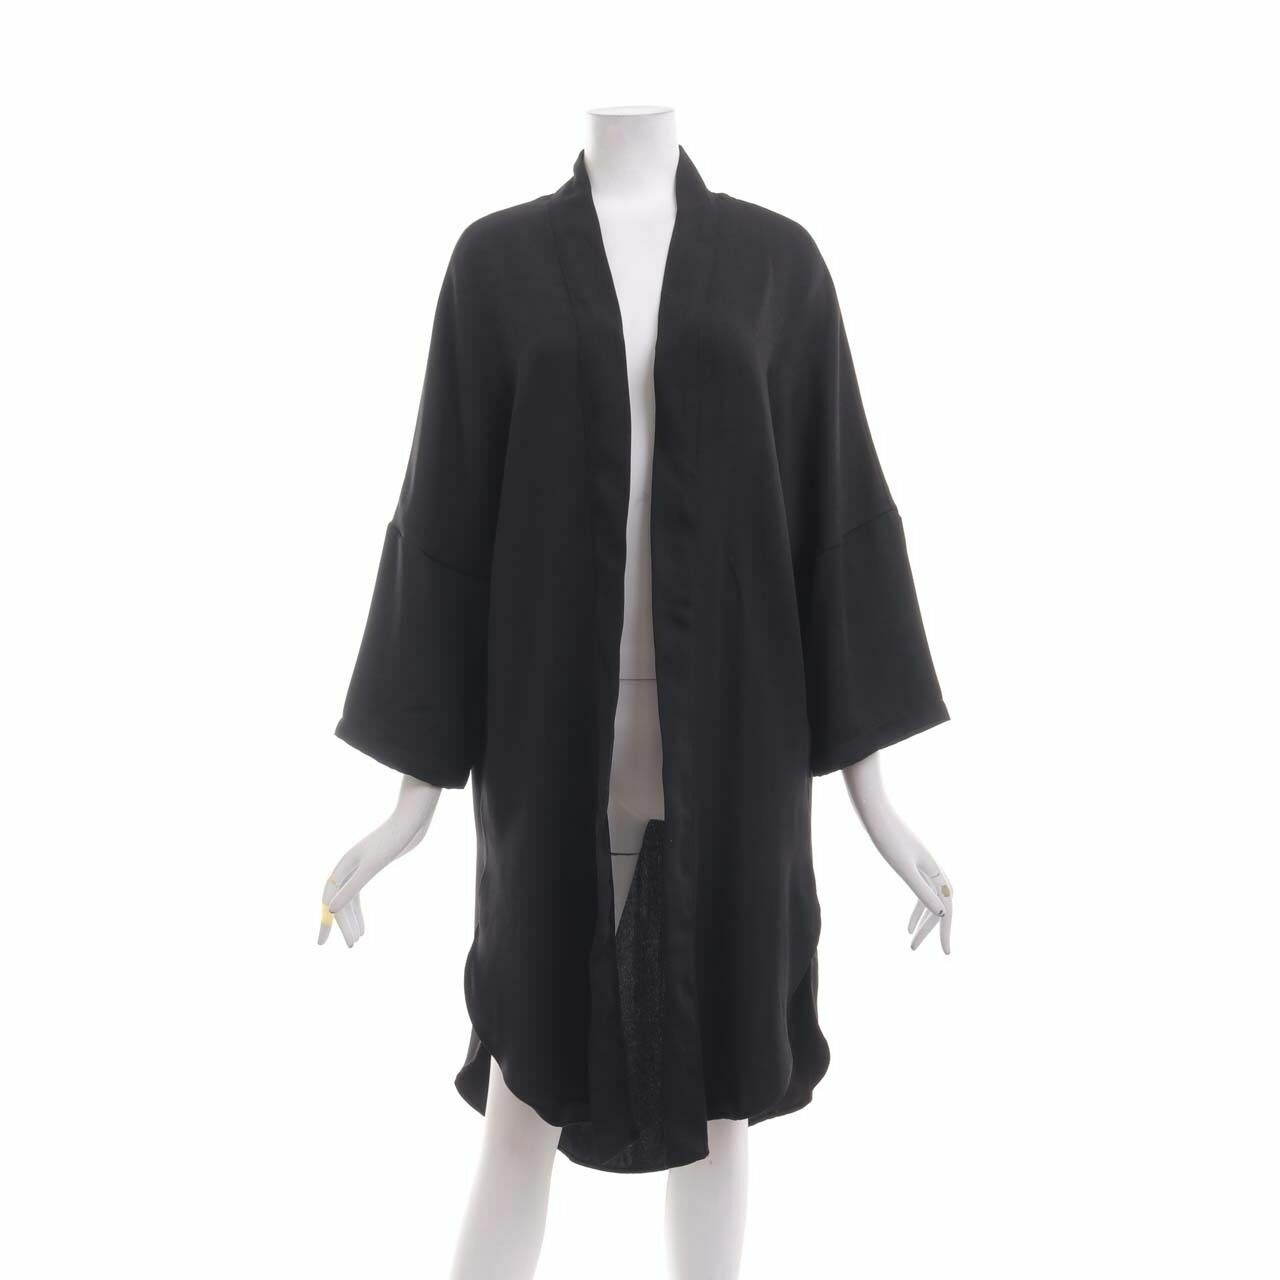 Then Blank Black Kimono Outerwear